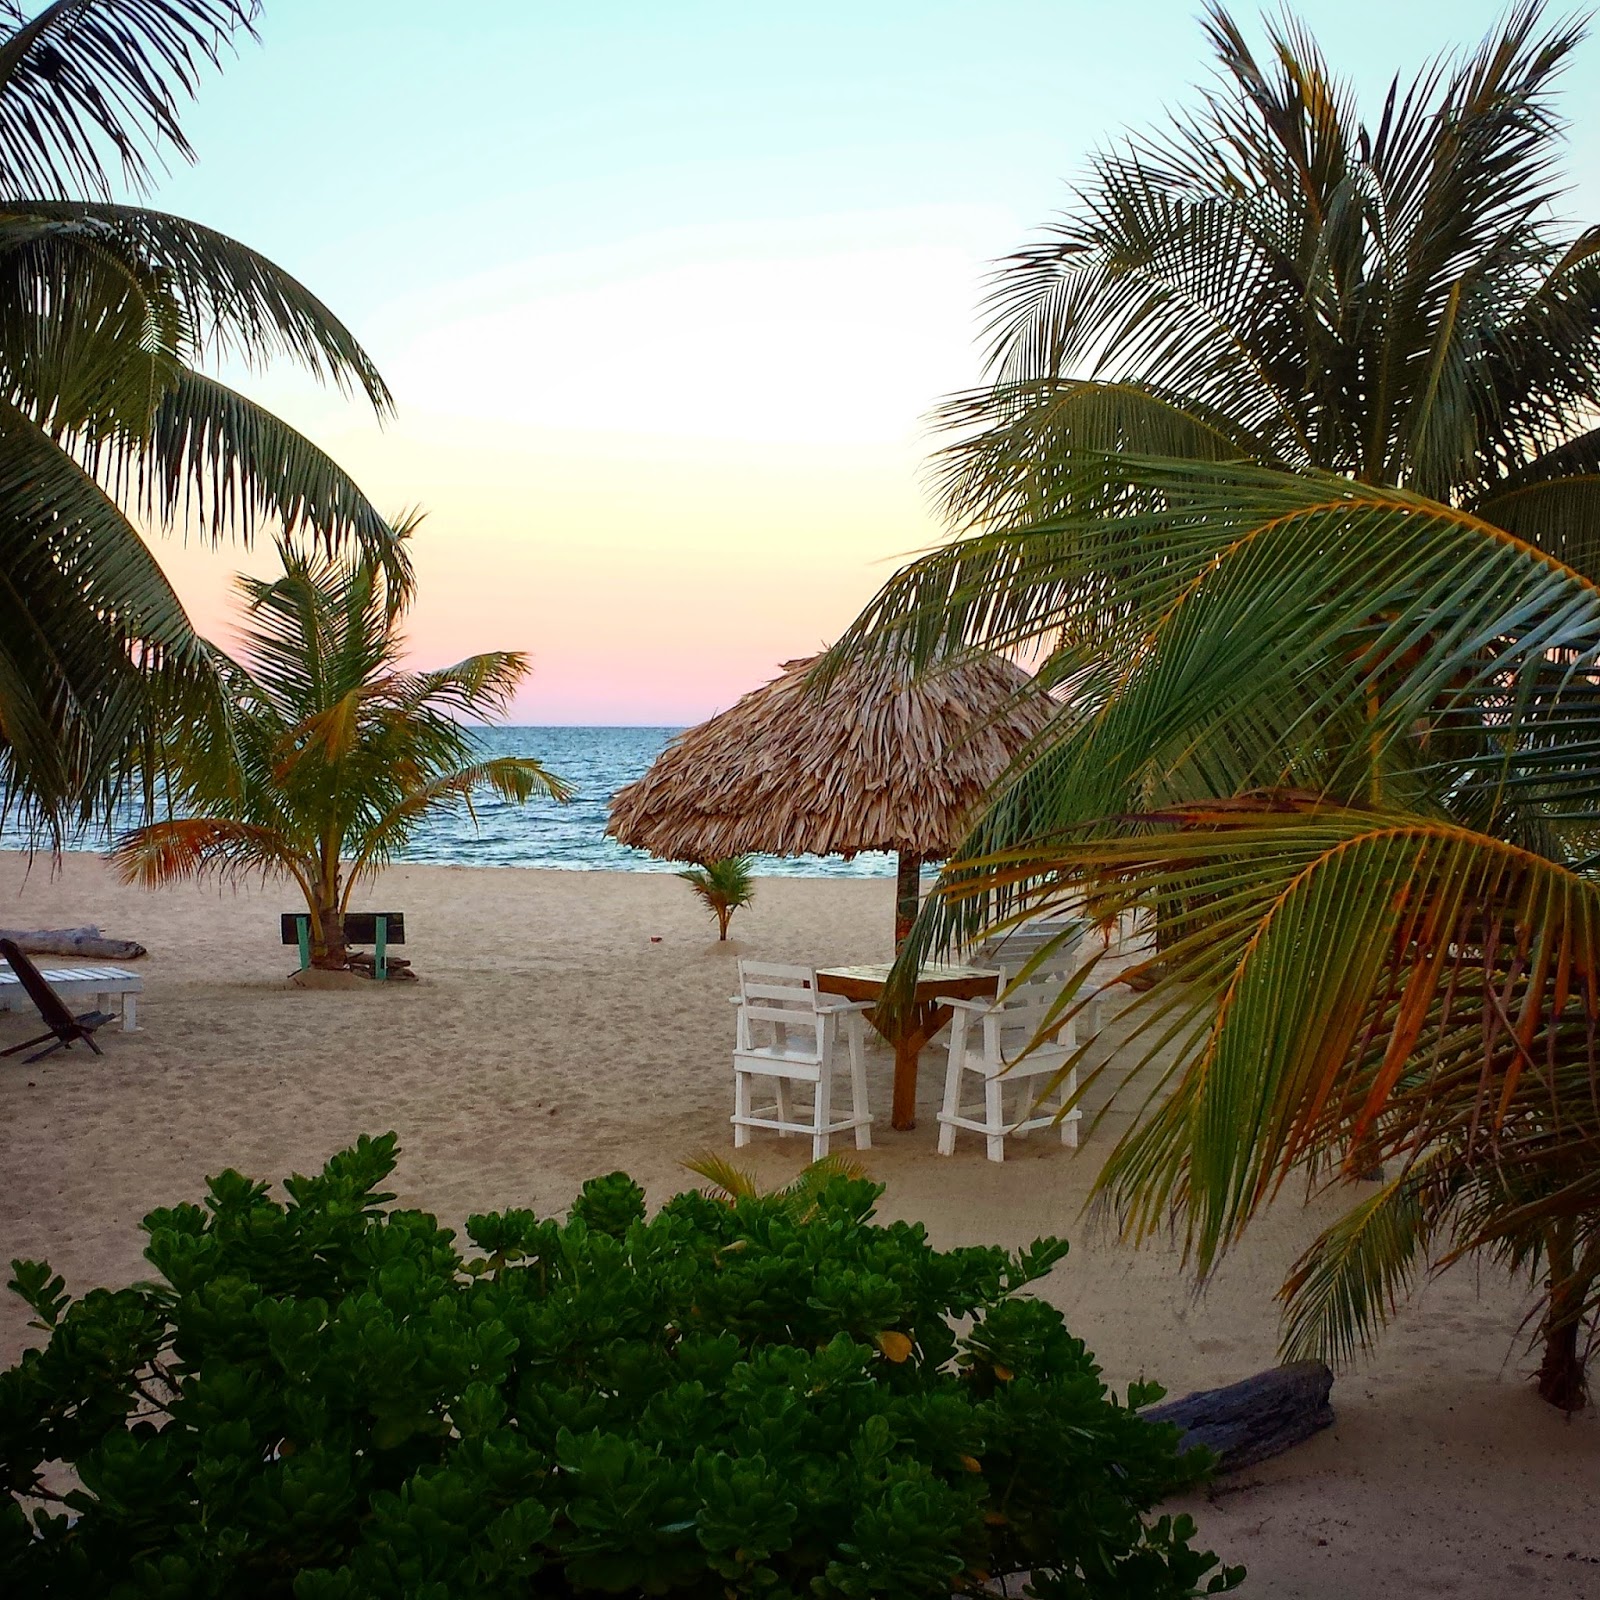 Remax Vip Belize: Pretty sunset